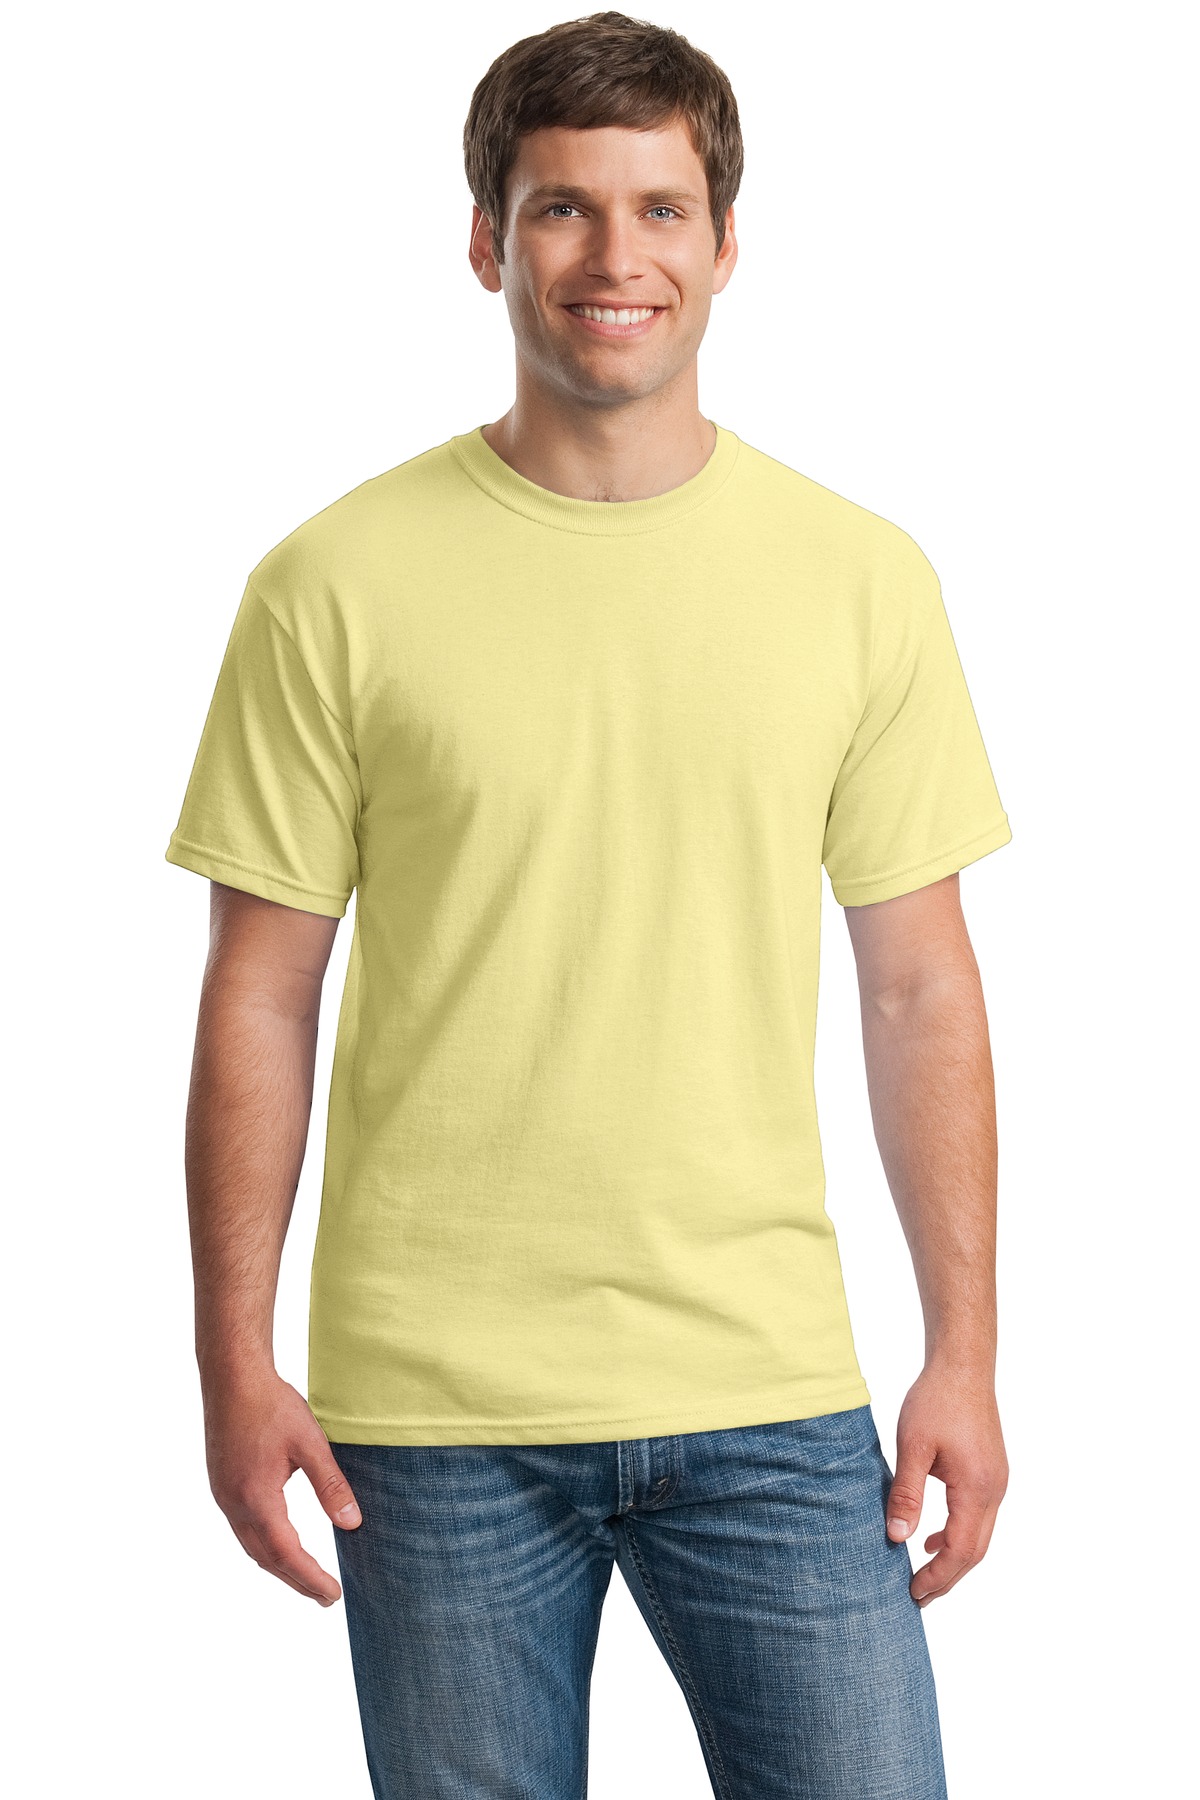 Plagen Vooravond inflatie Gildan G500 | Heavy Cotton ™ 100% Cotton T-Shirt | ShirtSpace